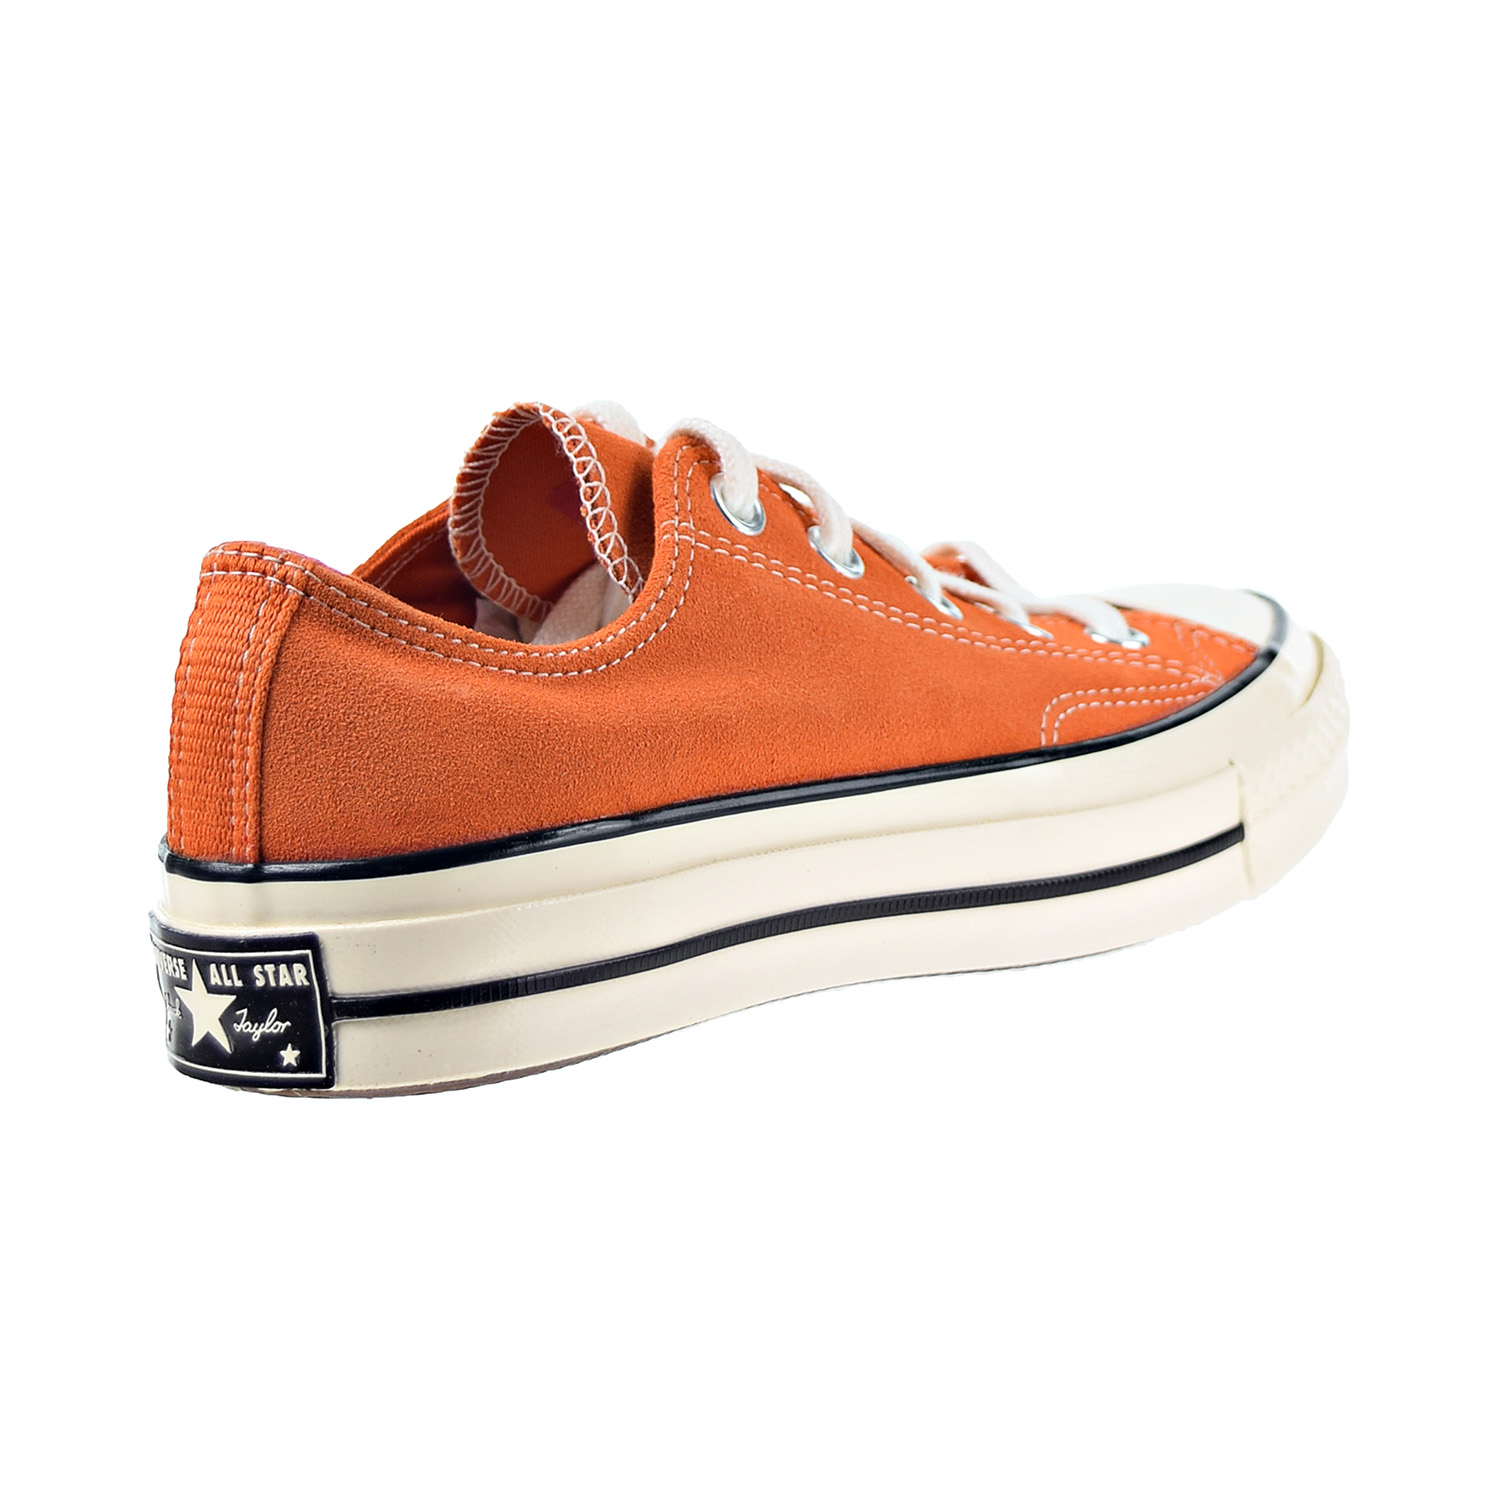 Converse Chuck 70 Ox Men's Shoes Campfire Orange 166217c